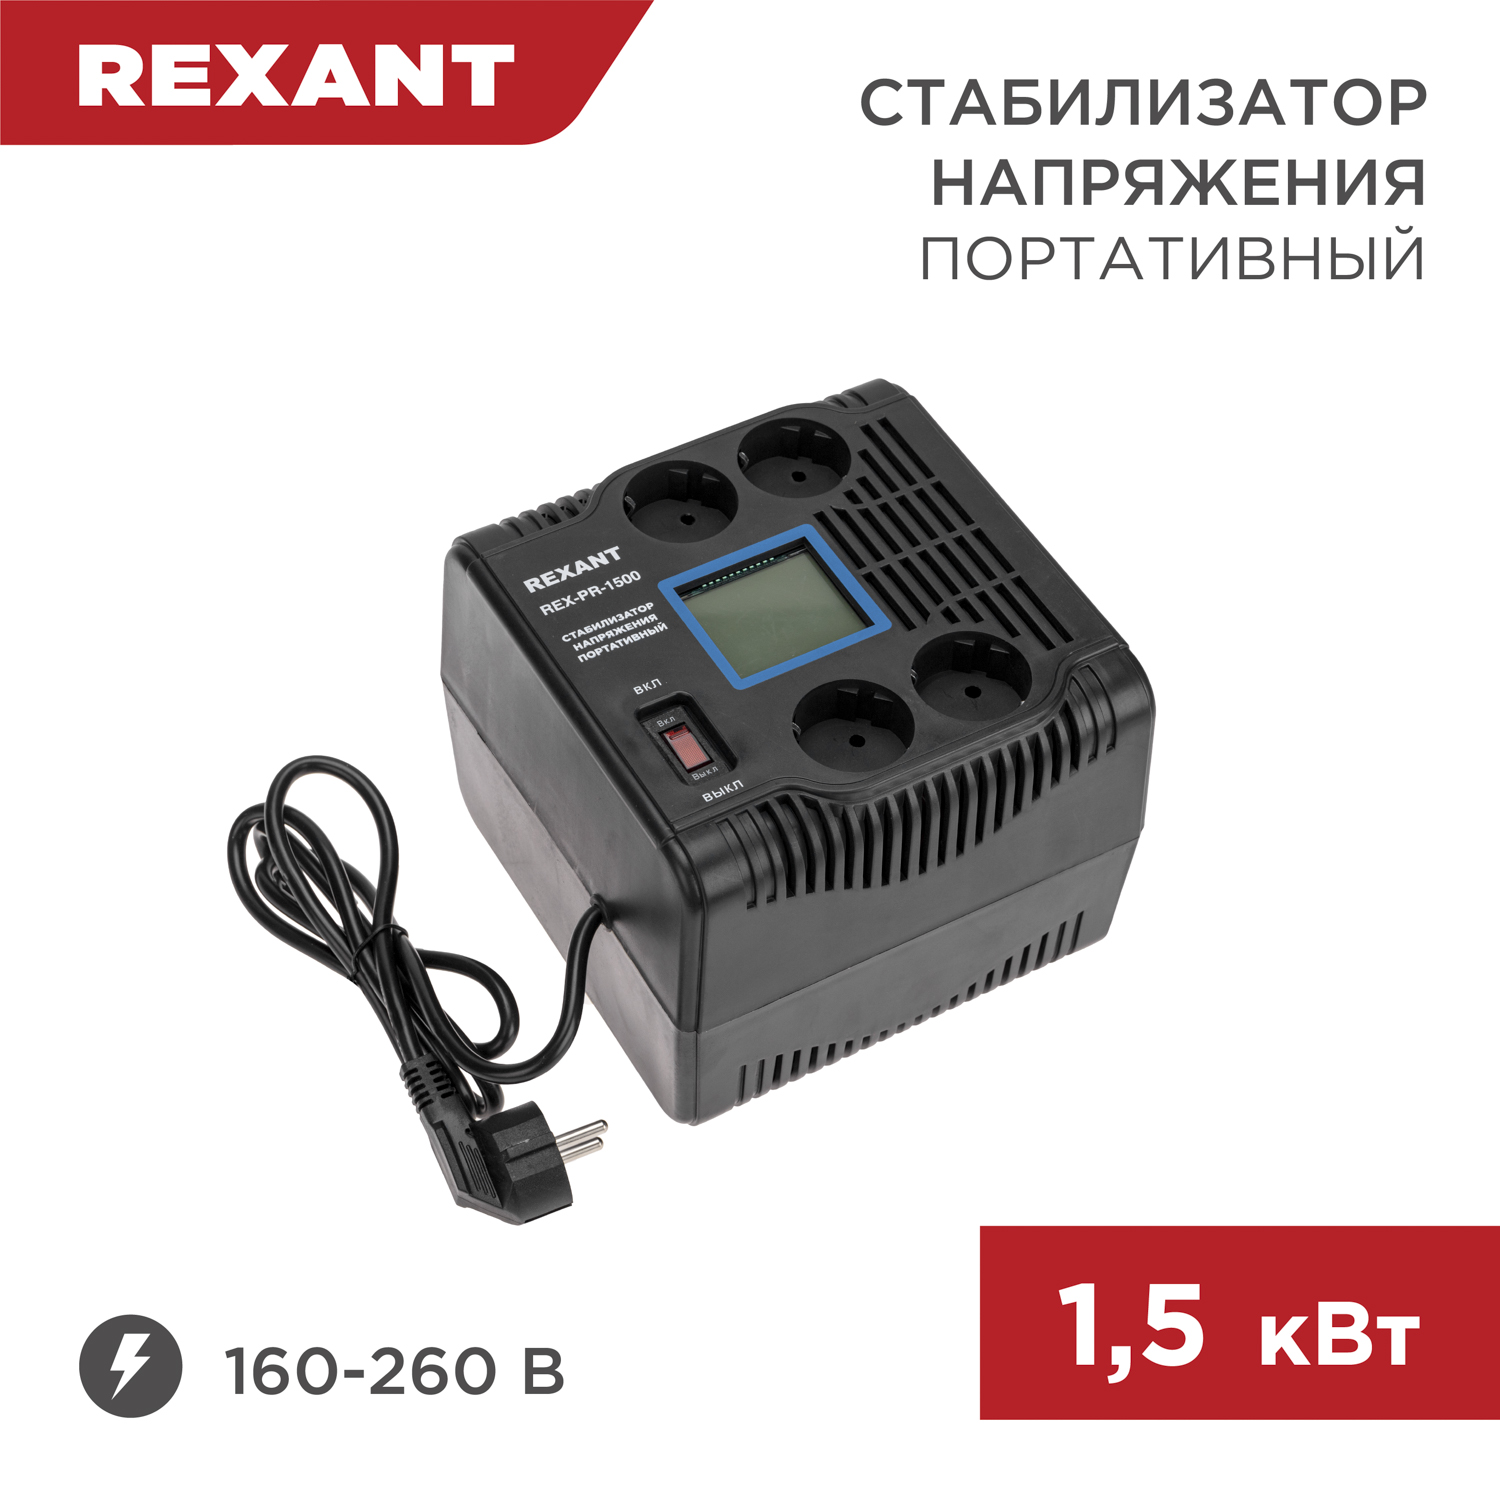 Стабилизатор напряжения портативный REXANT REX-PR-1500 11-5031 стабилизатор напряжения портативный rexant rex pr 500 11 5037